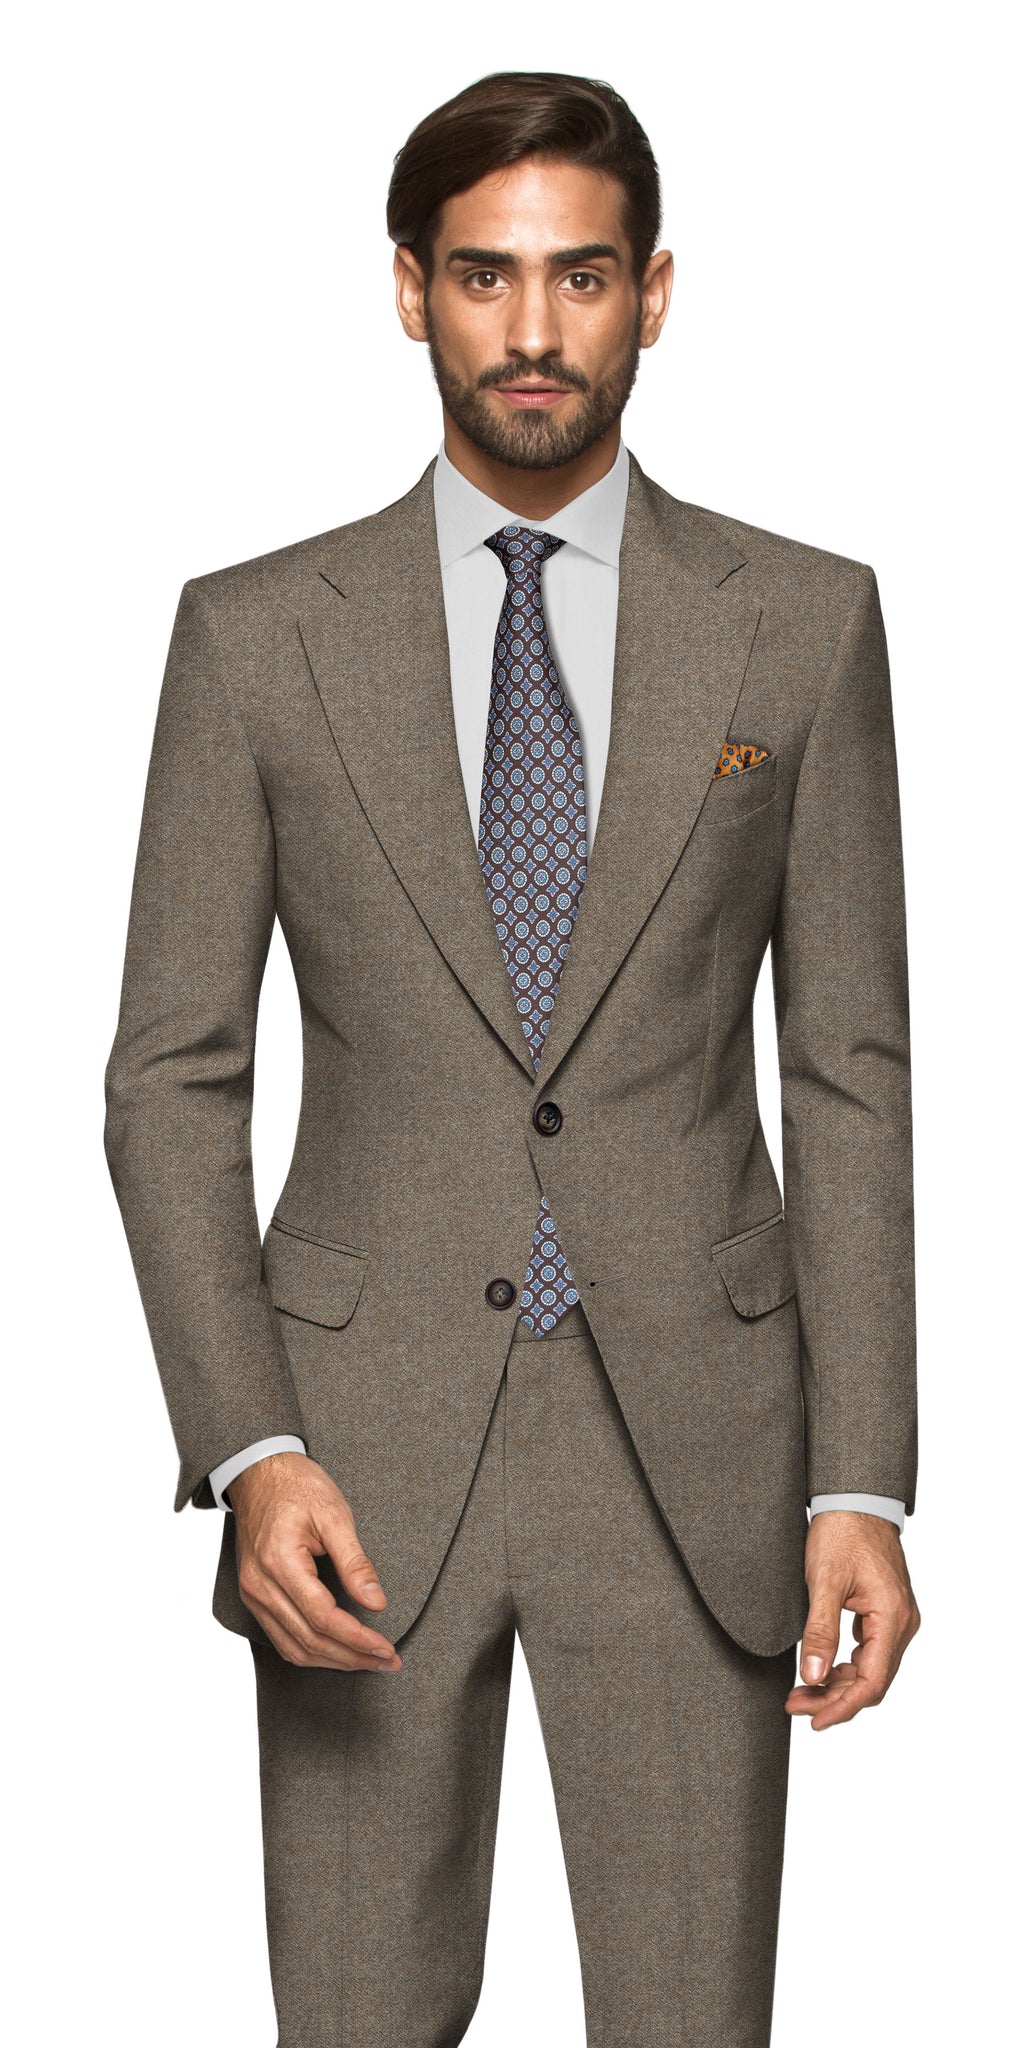 Corsica Suit